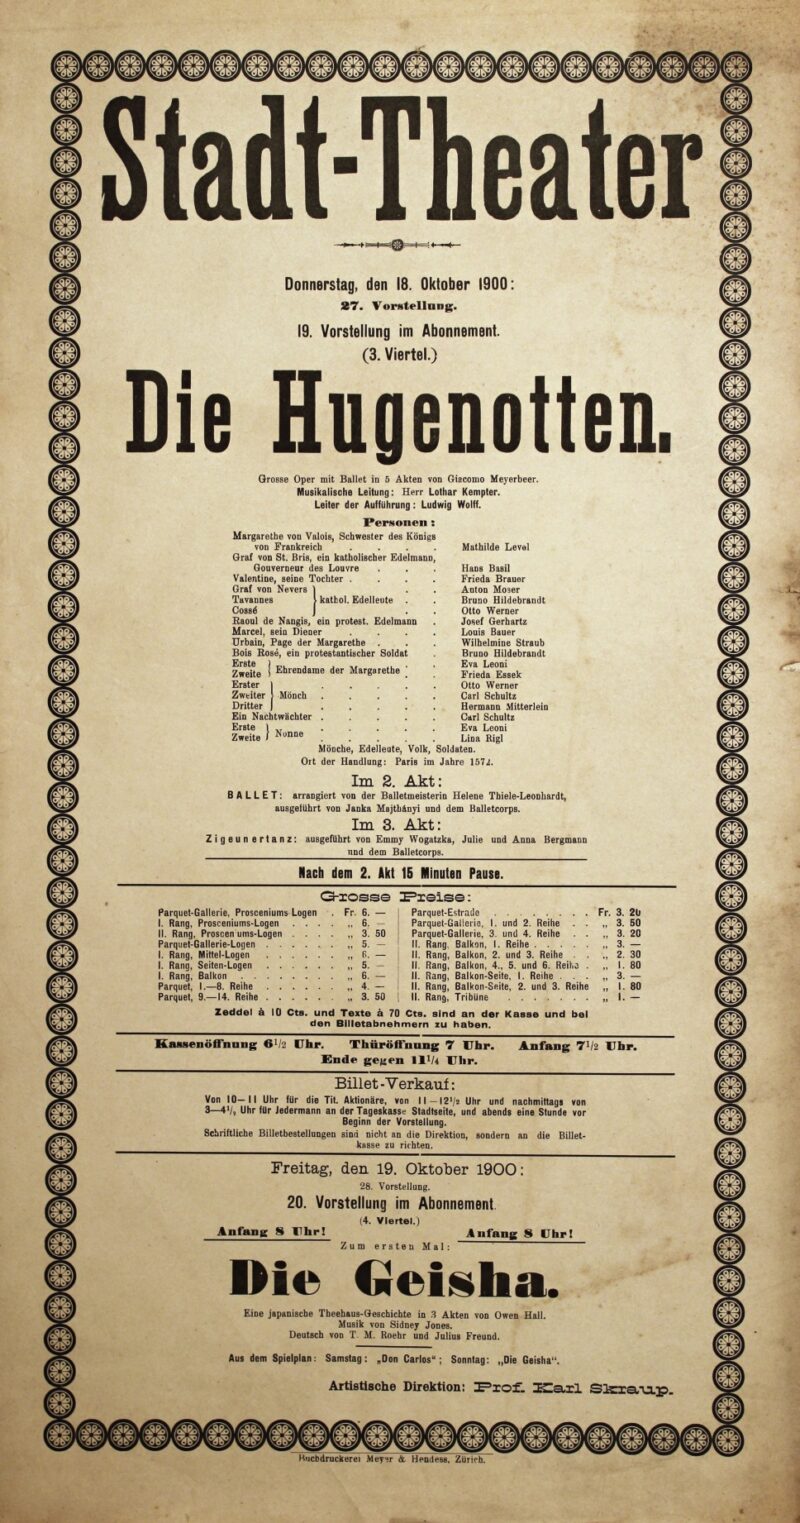 Abbildung 1: „Original-Theaterzettel: Die Hugenotten“ von Stadt-Theater Zürich